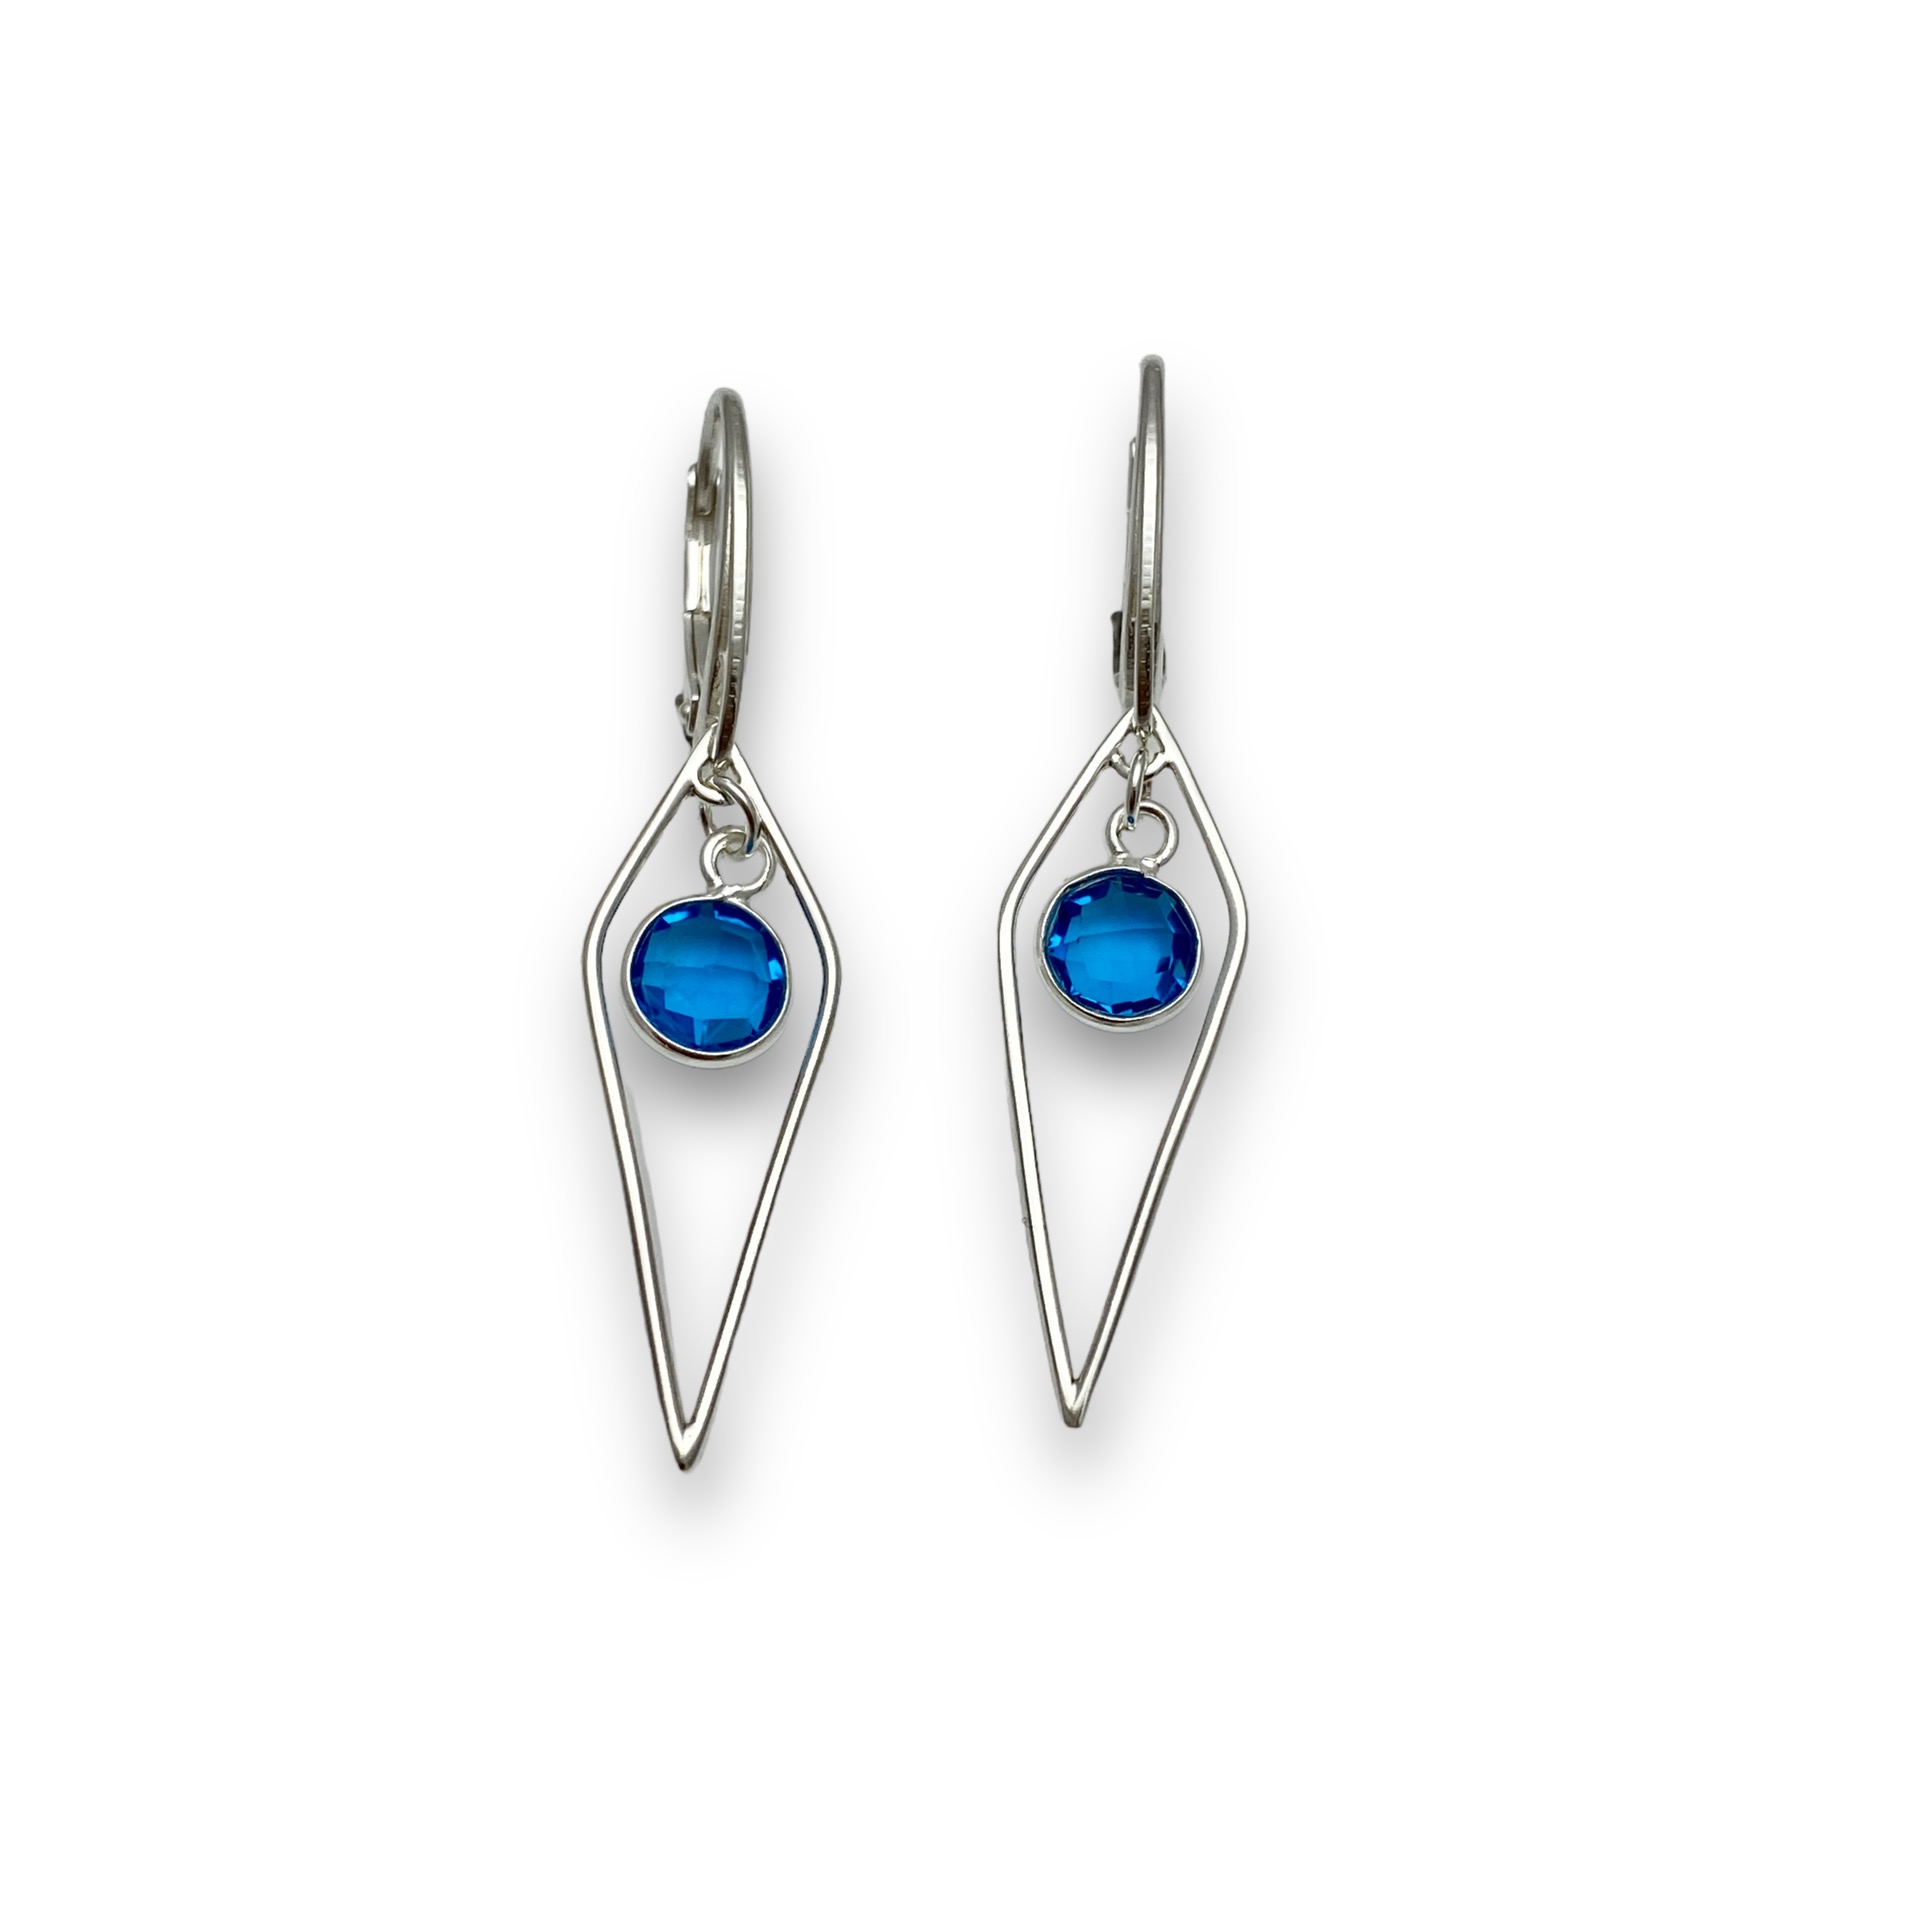 Blue topaz kite earring, dangle earrings